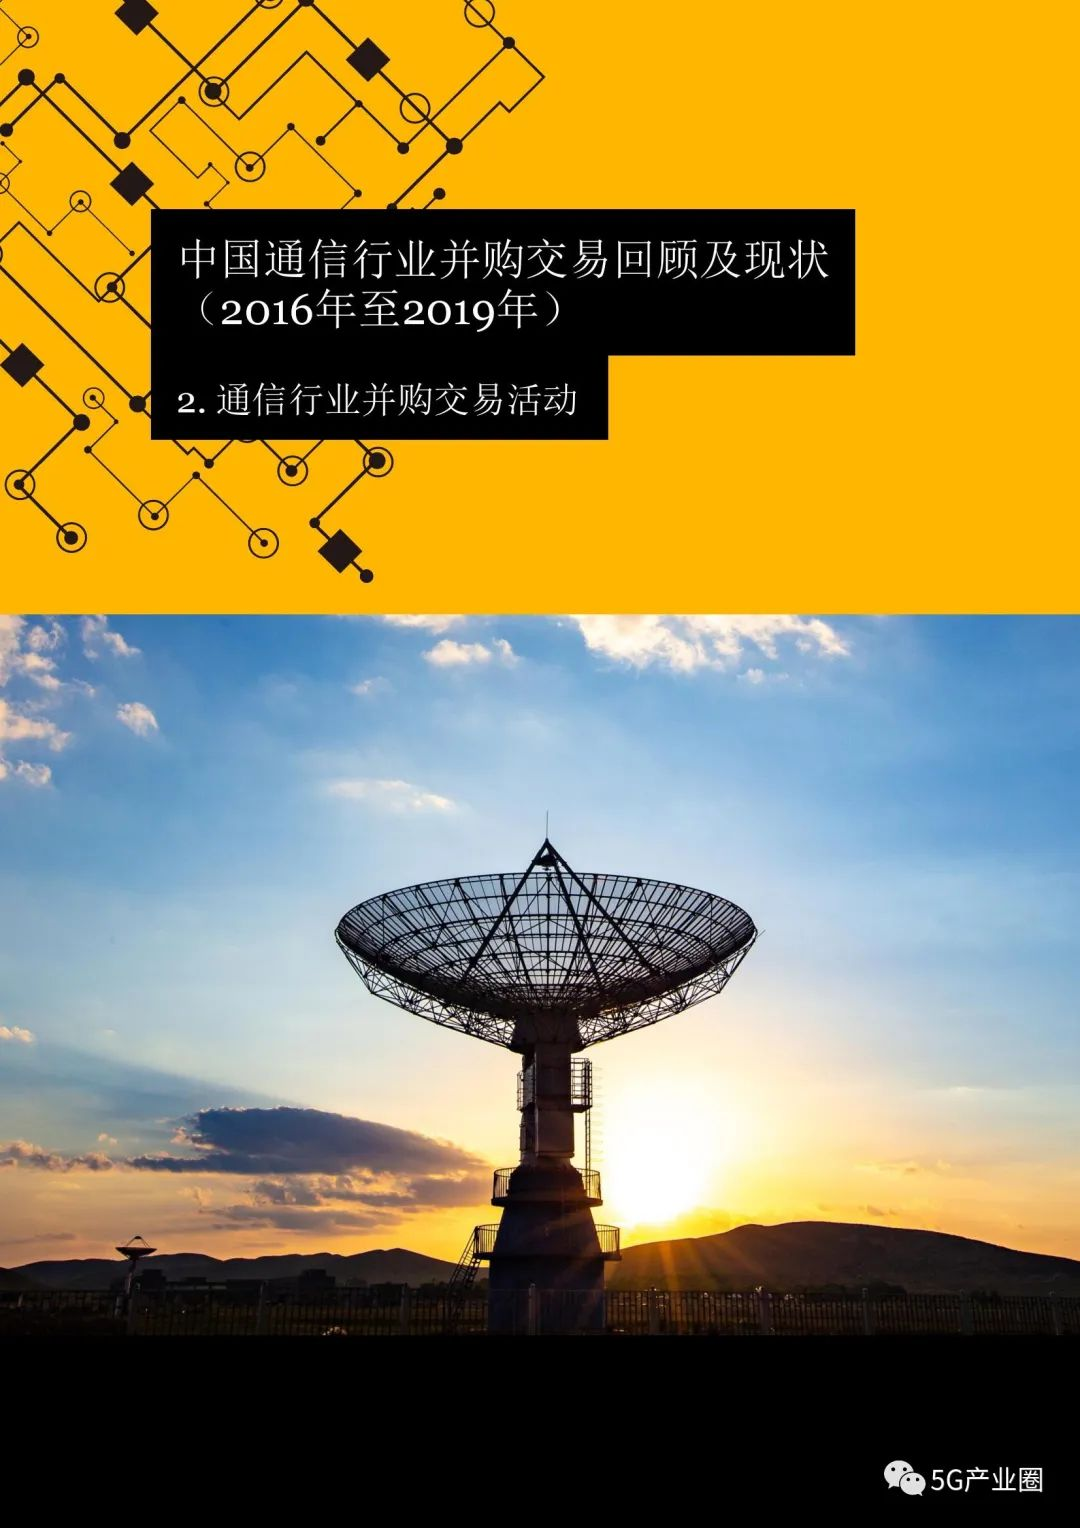 上海 5G 手机研发中心：引领未来通信时代的创新基地  第4张